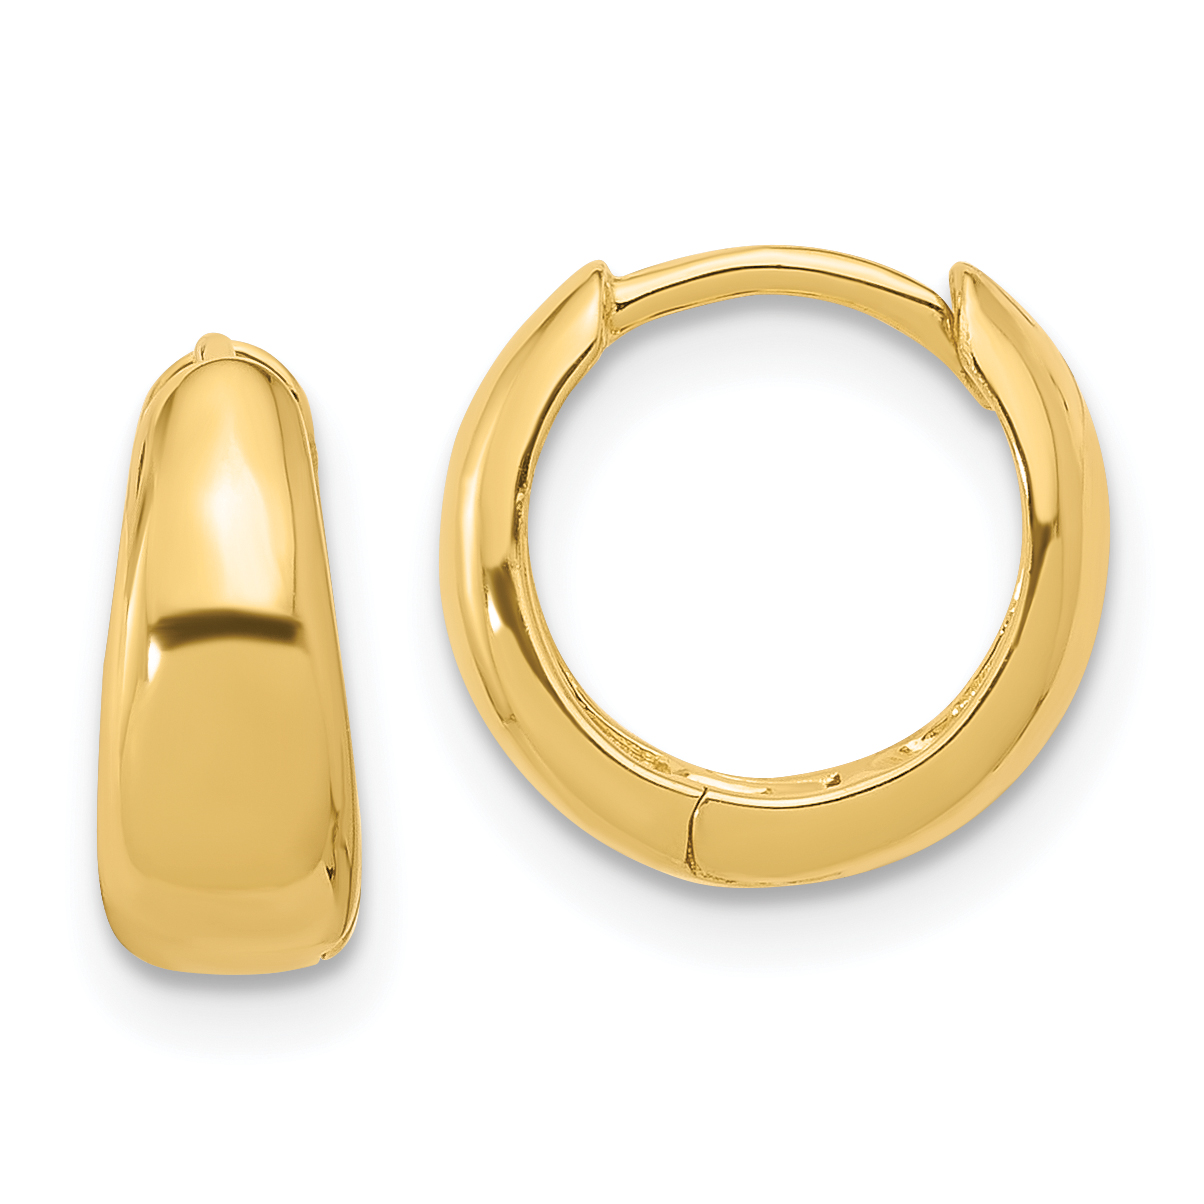 Hoop Earrings African Dubai Marbling Pattern Golden Earrings For Women 24k  Gold Plated High Quality Copper Bride Jewelry Gifts - Hoop Earrings -  AliExpress